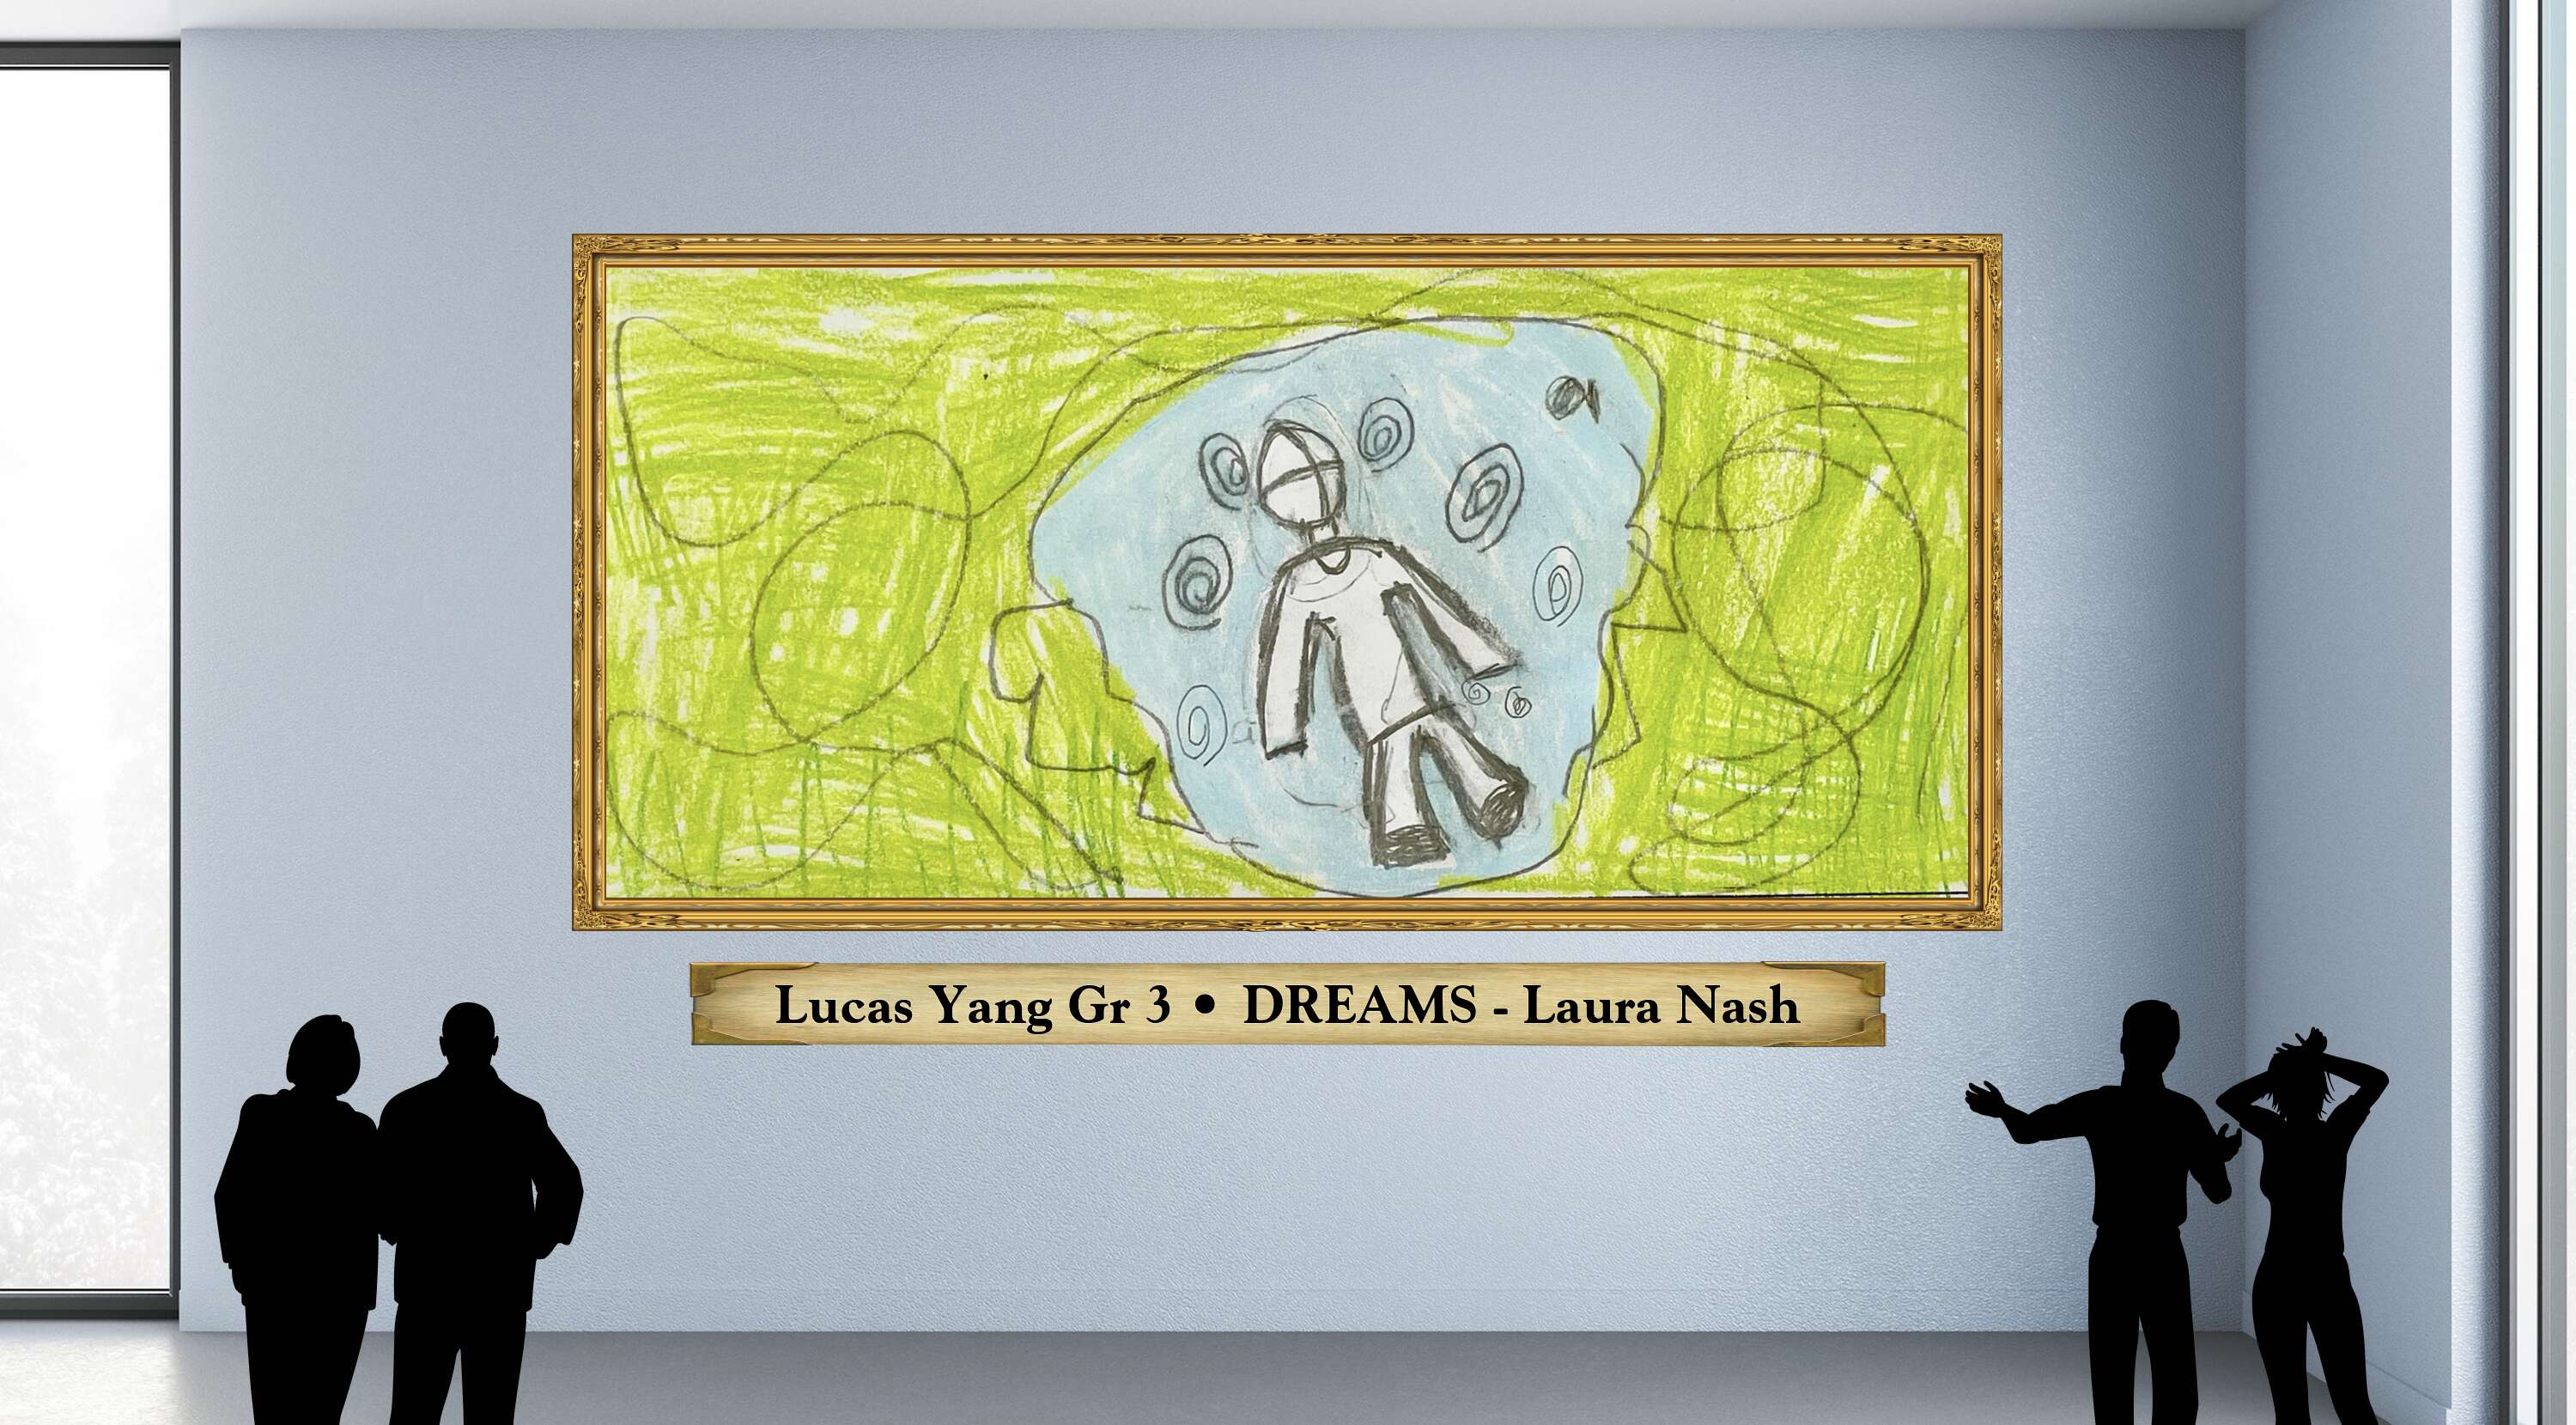 Lucas Yang Gr 3 • DREAMS - Laura Nash